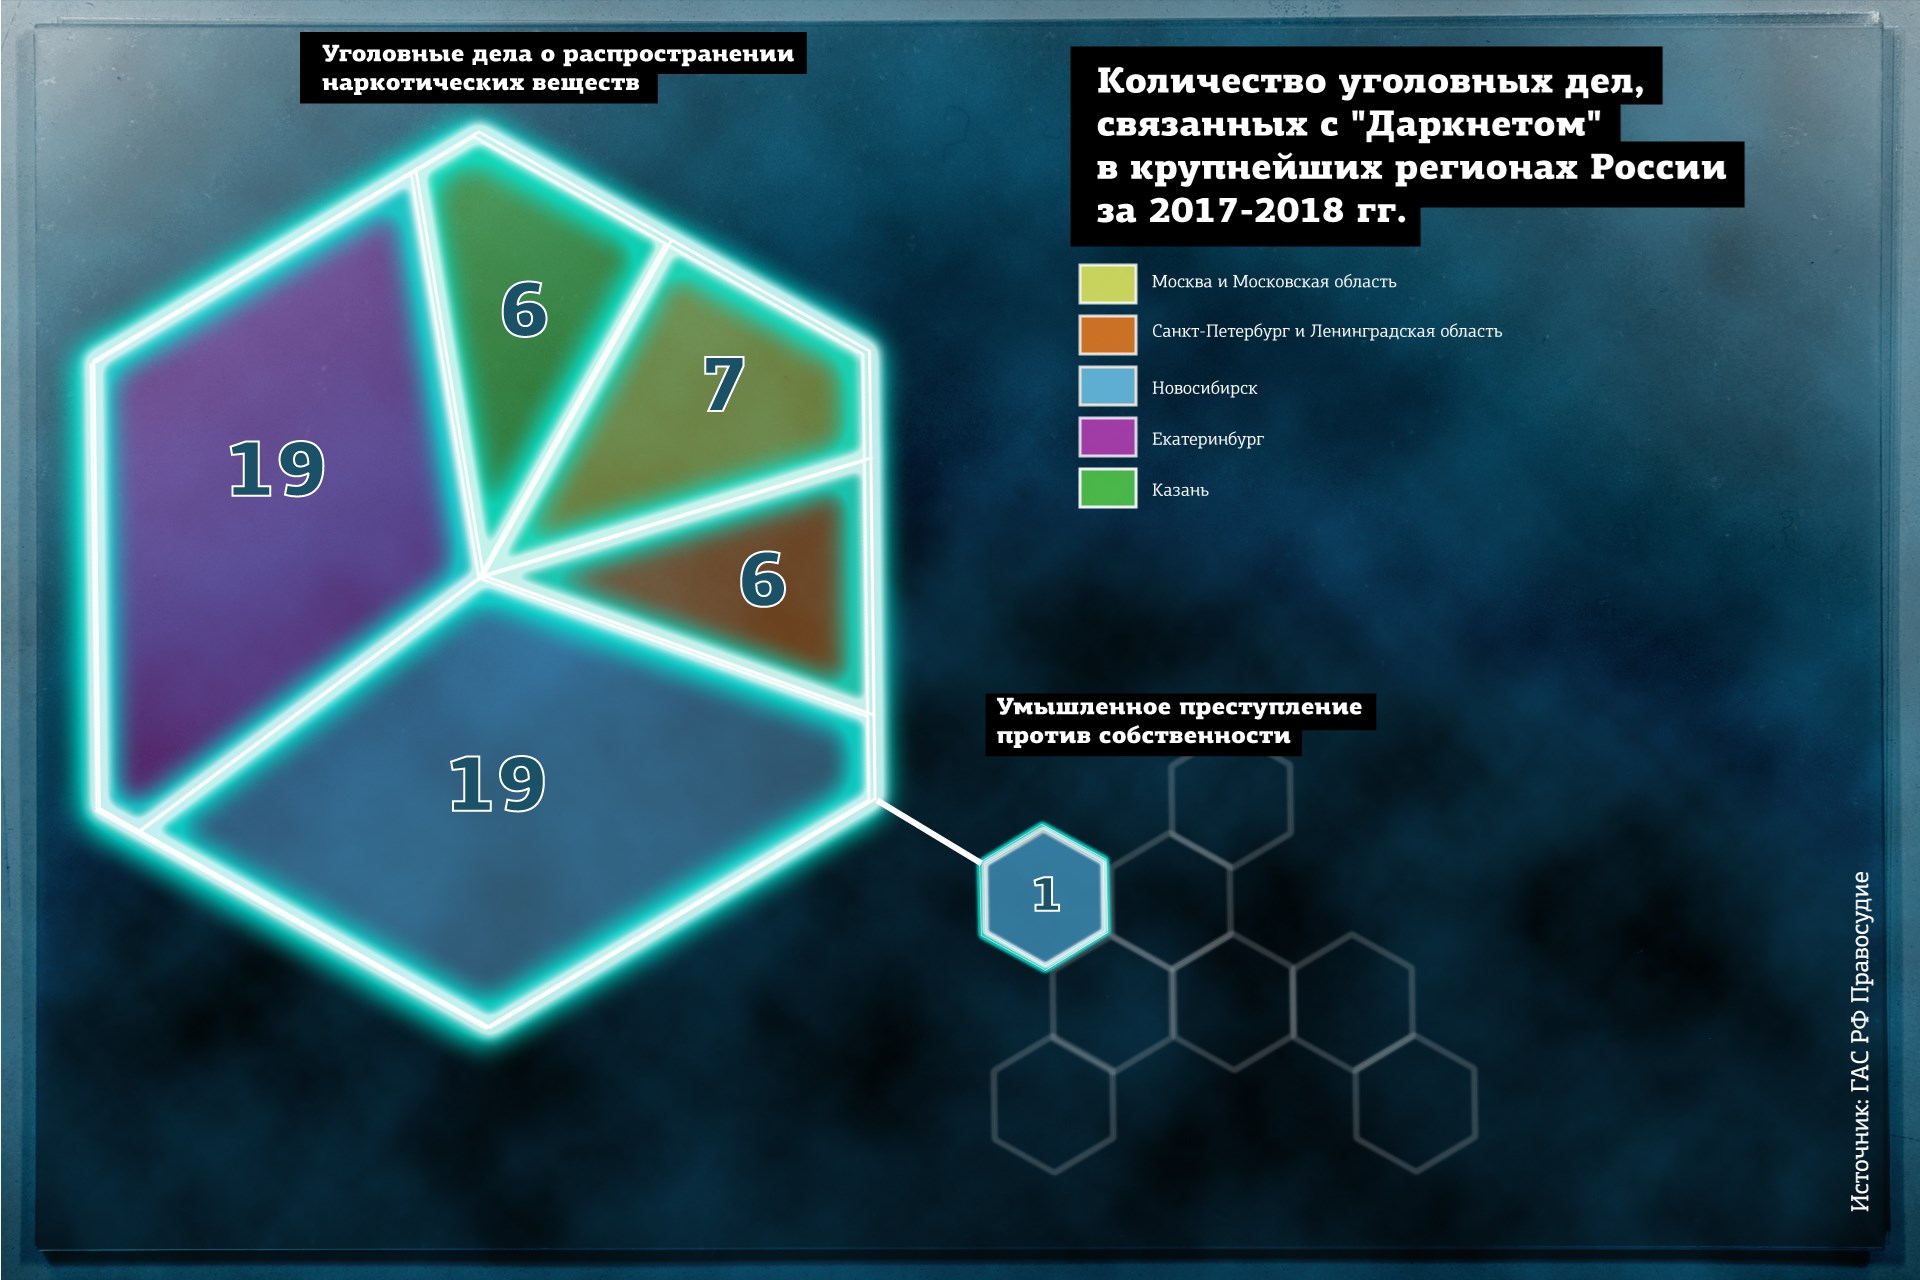 Как устроен даркнет hyrda скачать тор браузер бесплатно на русском языке для телефона гирда